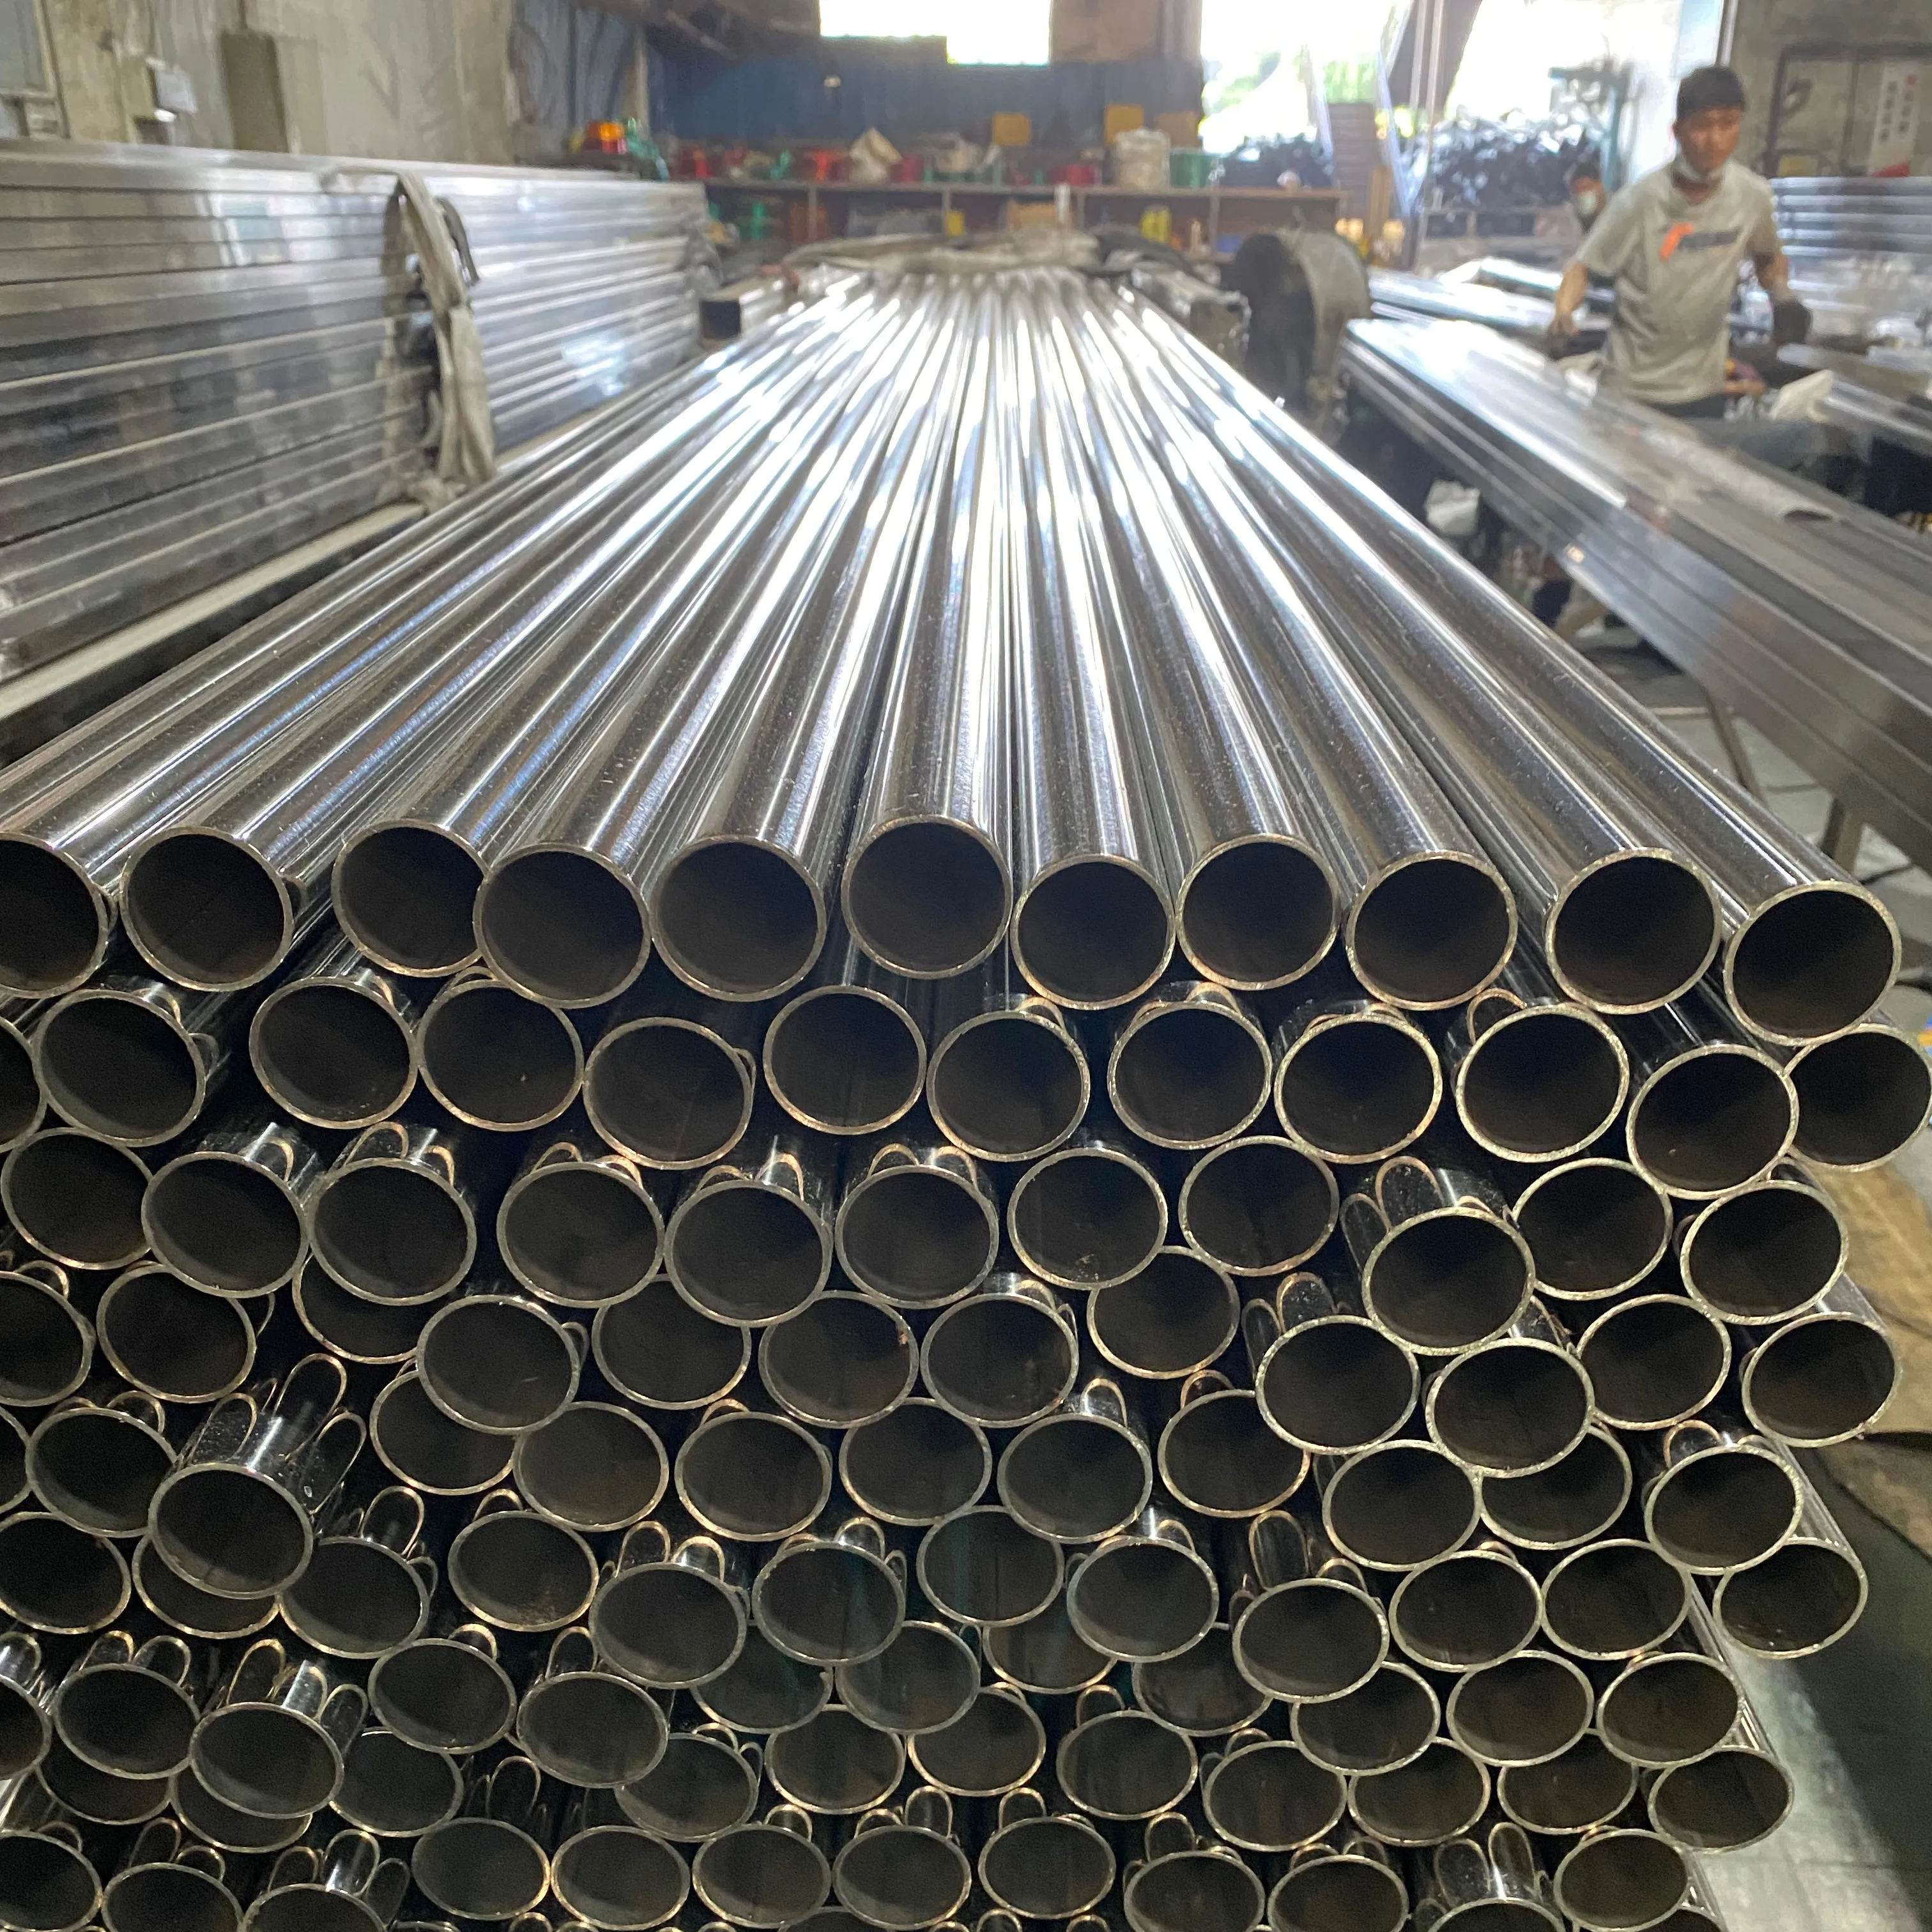 China top fornecedores fabricante melhor qualidade preço barato soldado tubo de aço inoxidável